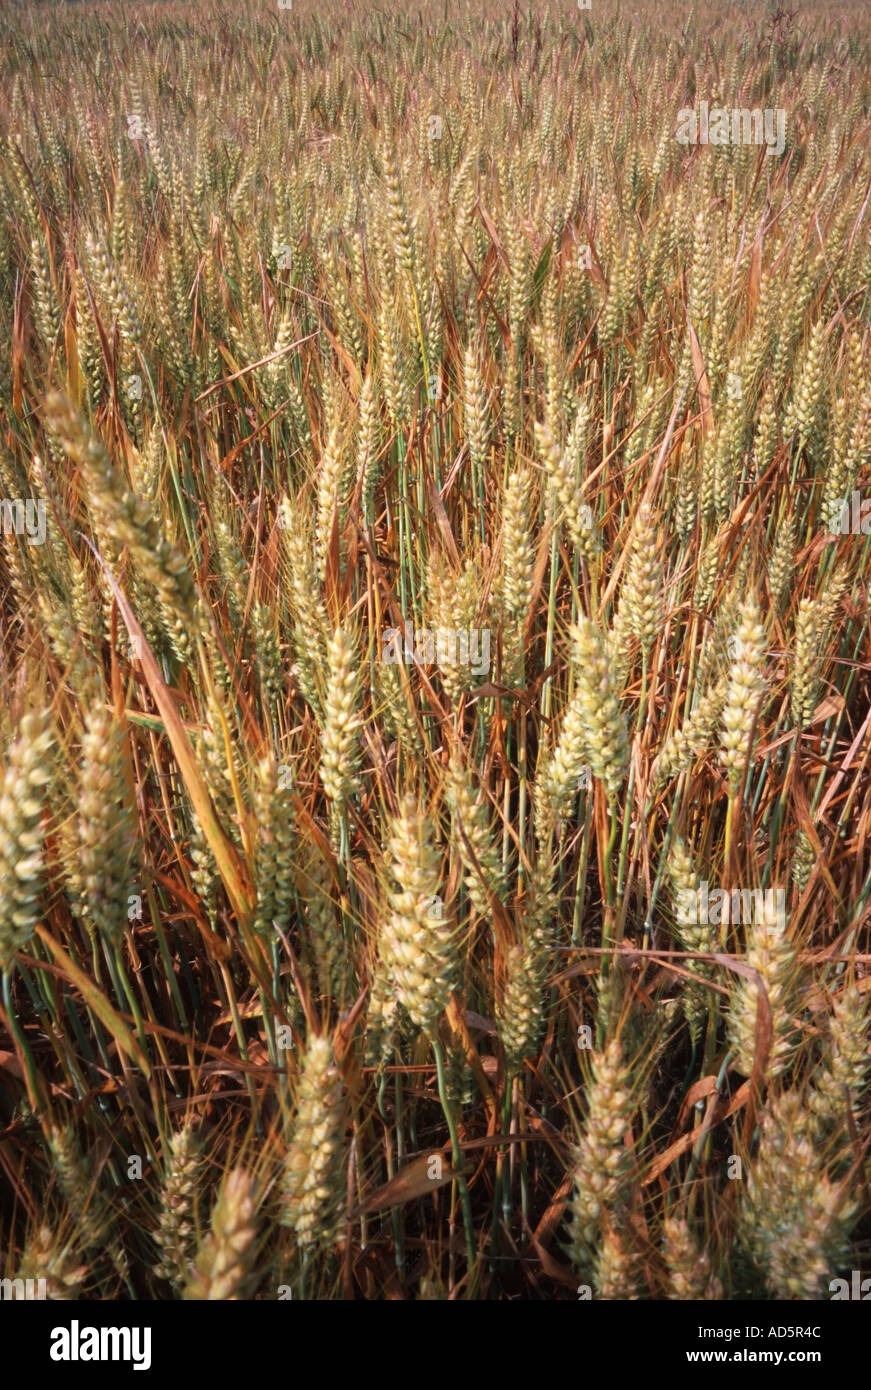 Una cosecha de cebada crece en un campo Foto de stock